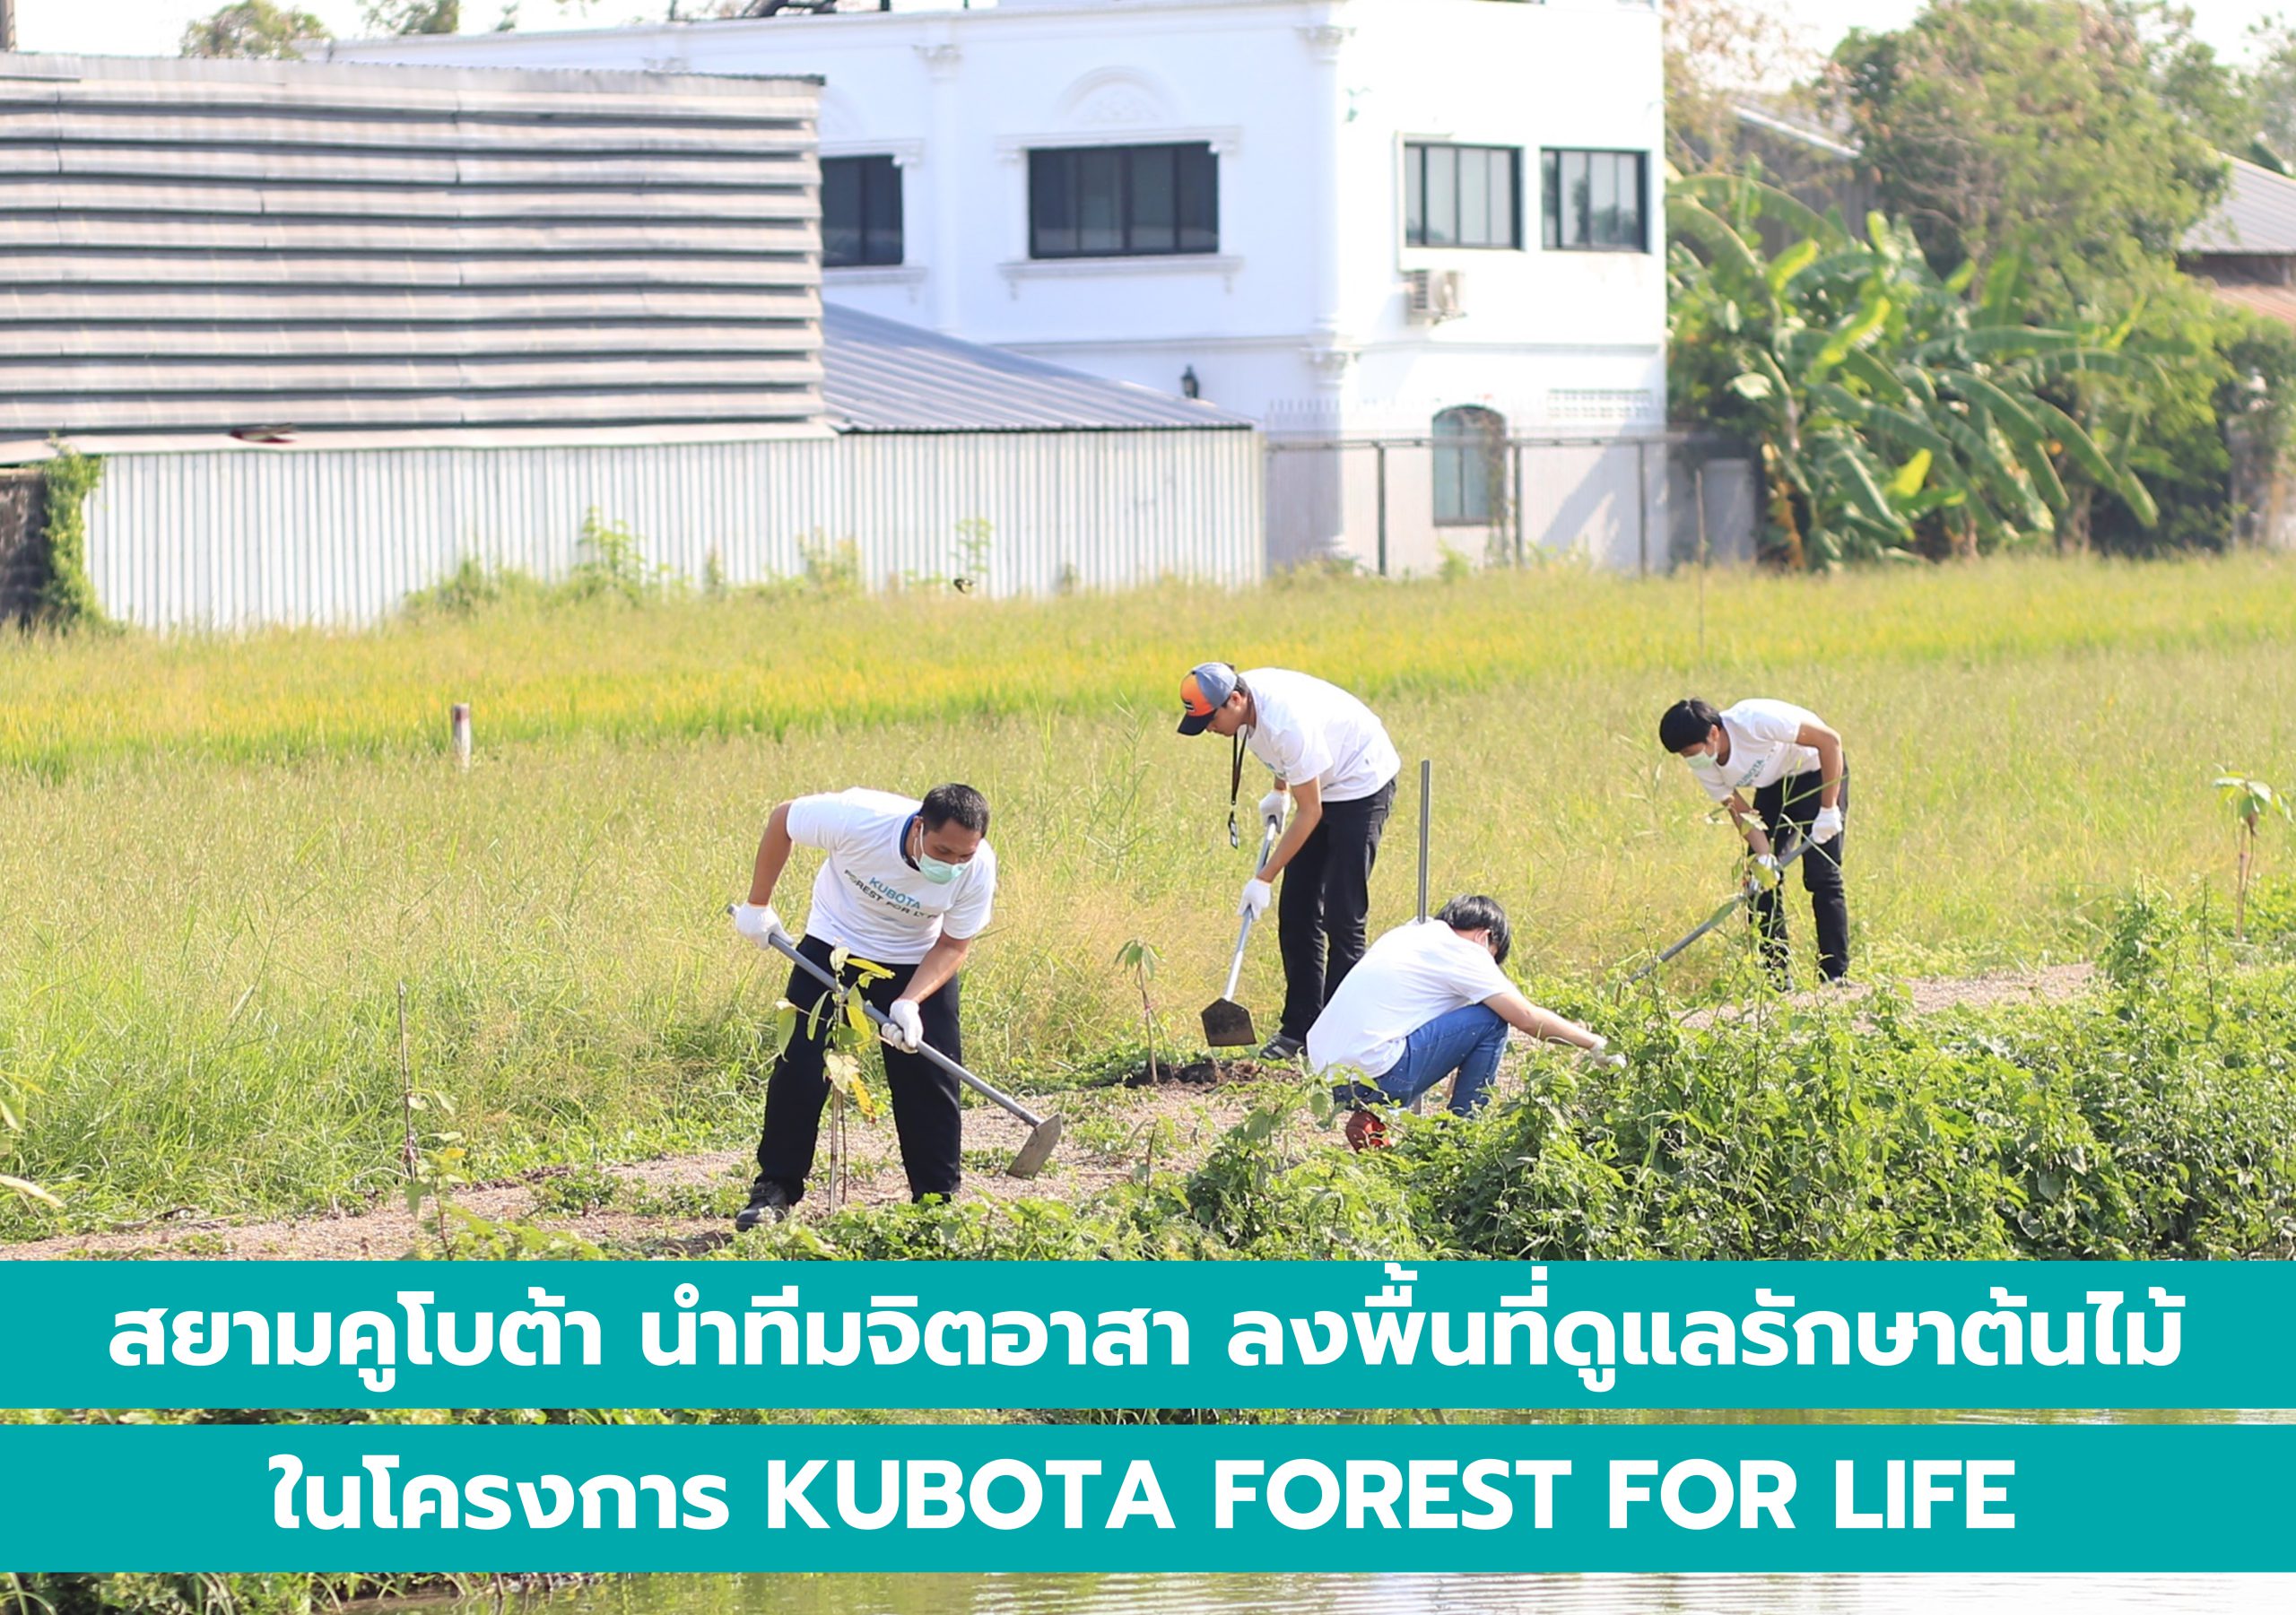 สยามคูโบต้า นำทีมจิตอาสา ลงพื้นที่ดูแลรักษาต้นไม้ ในโครงการ KUBOATA FOREST FOR LIFE